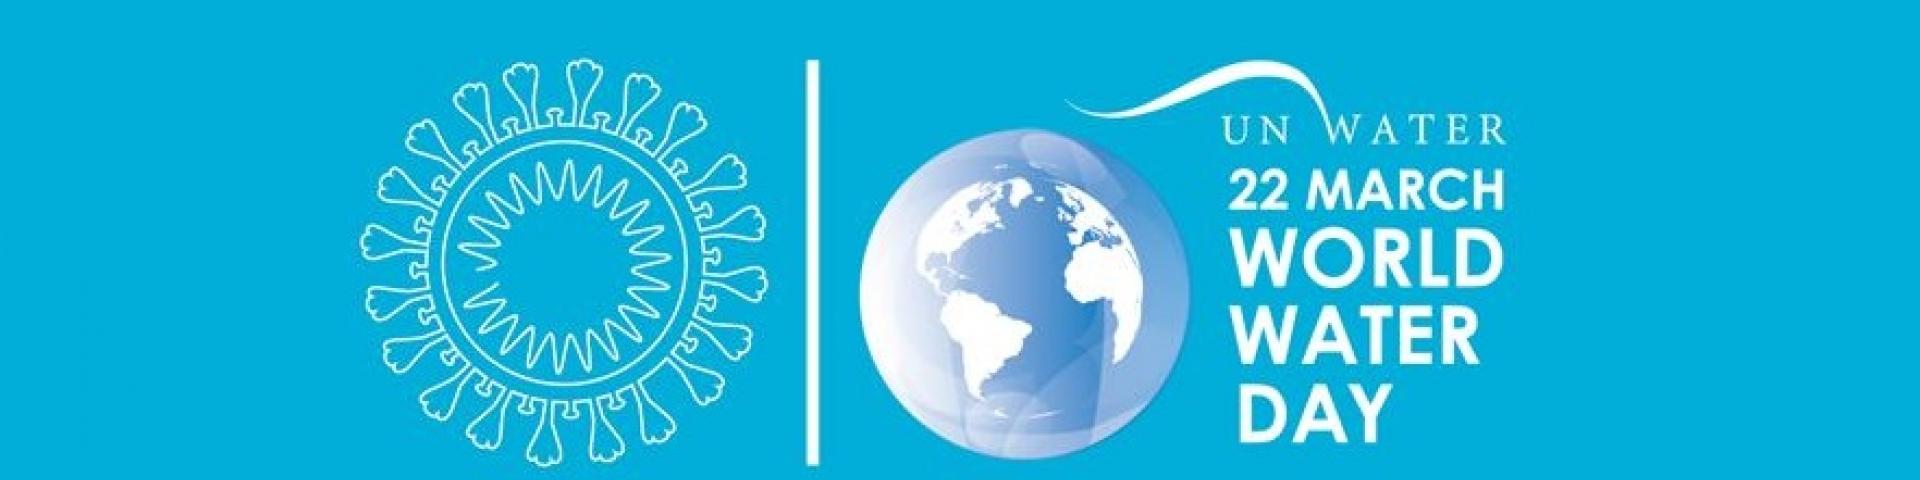 World Water Day 2020 banner coronavirus pandemic